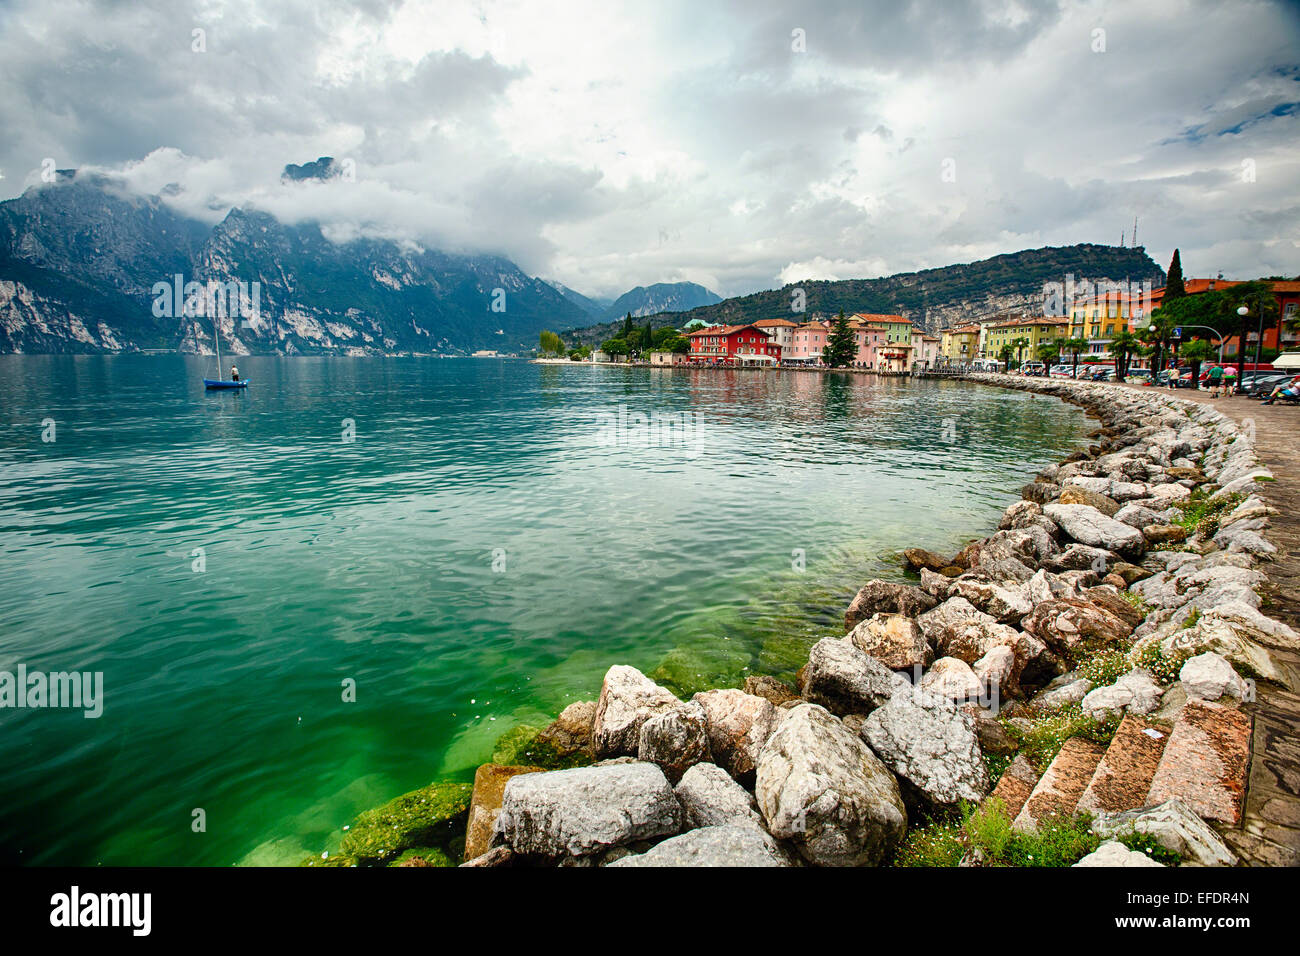 Portrait d'un lac alpin, Torbole sul Garda, Italie Banque D'Images